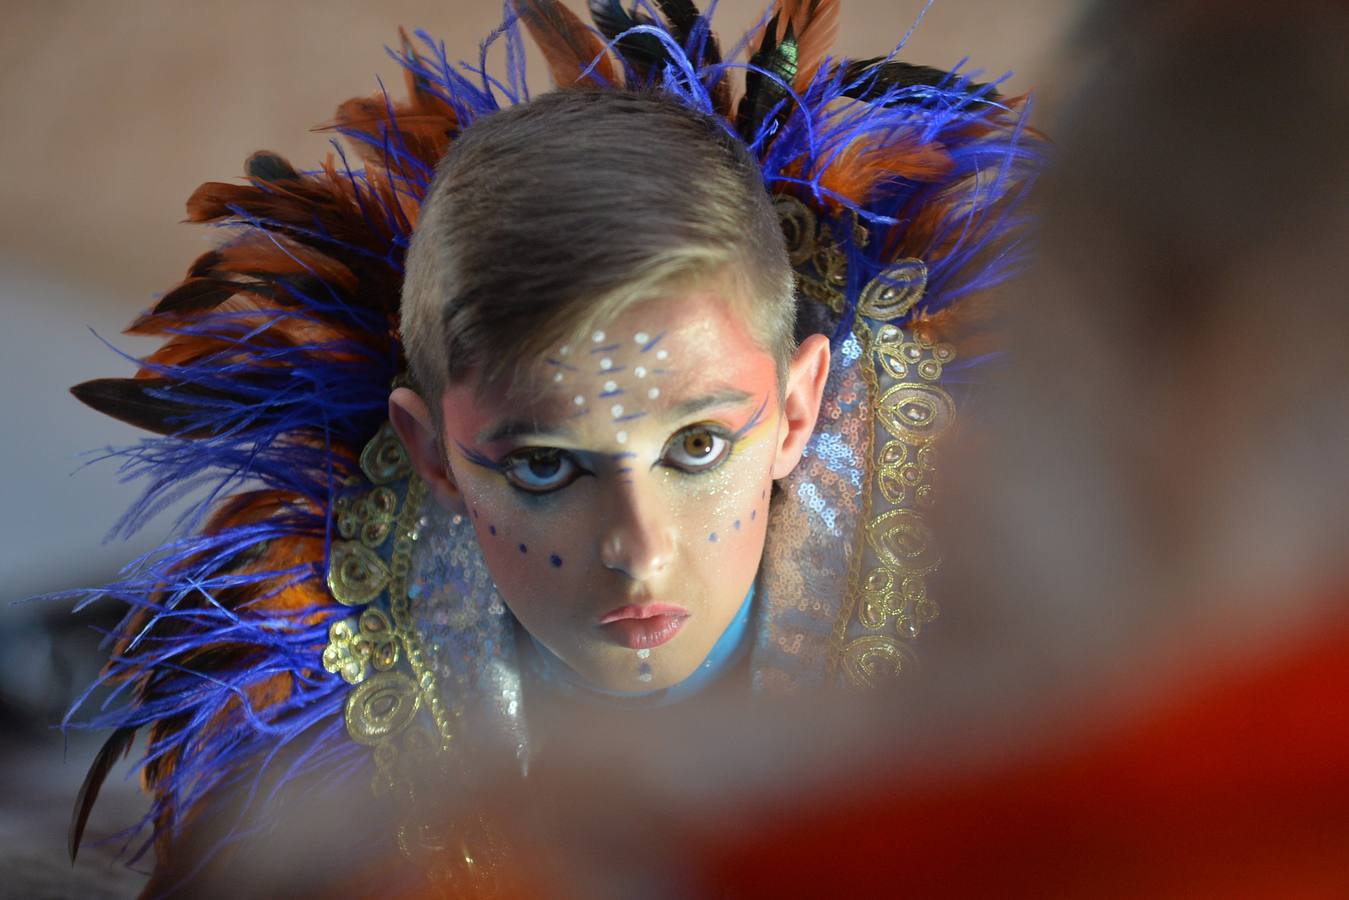 Los coloridos trajes, el humor y la crítica cautivan al público en el segundo desfile de comparsas y carrozas del Carnaval, presenciado por 15.000 espectadores